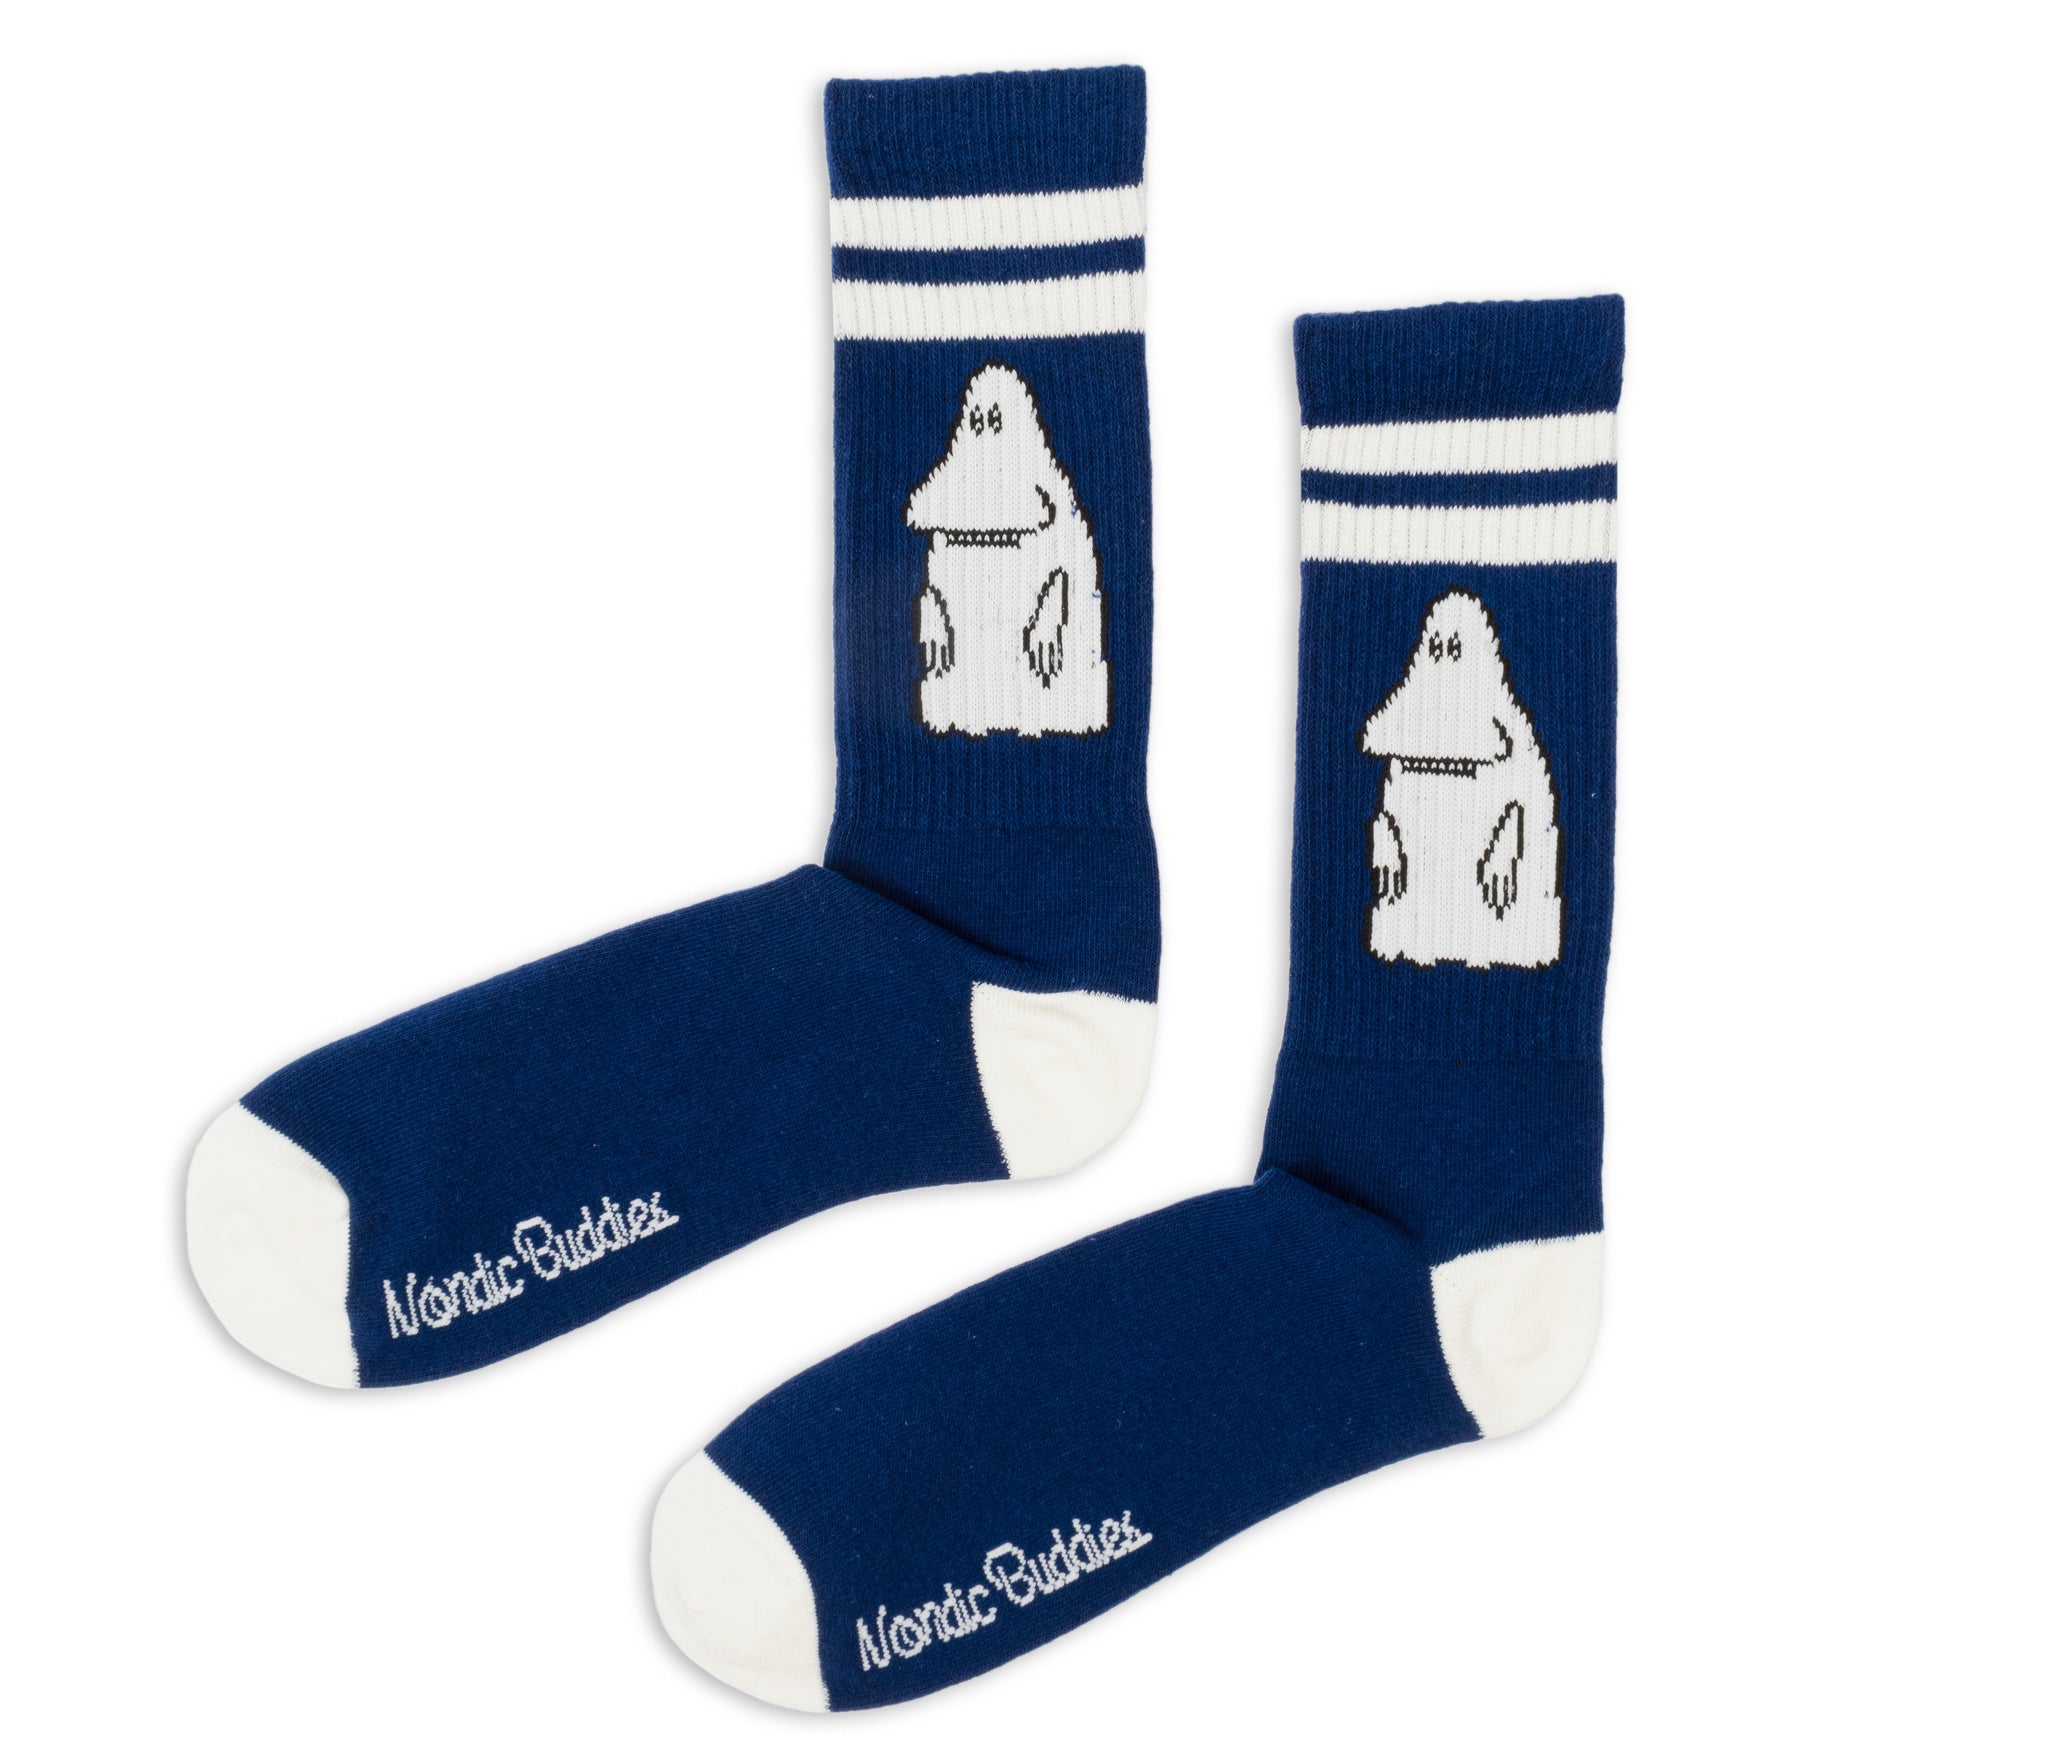 Moomin Retro Socks combo Blue/White The Groke | Muumi Retro Sukat Combo Sininen/Valkoinen Mörkö